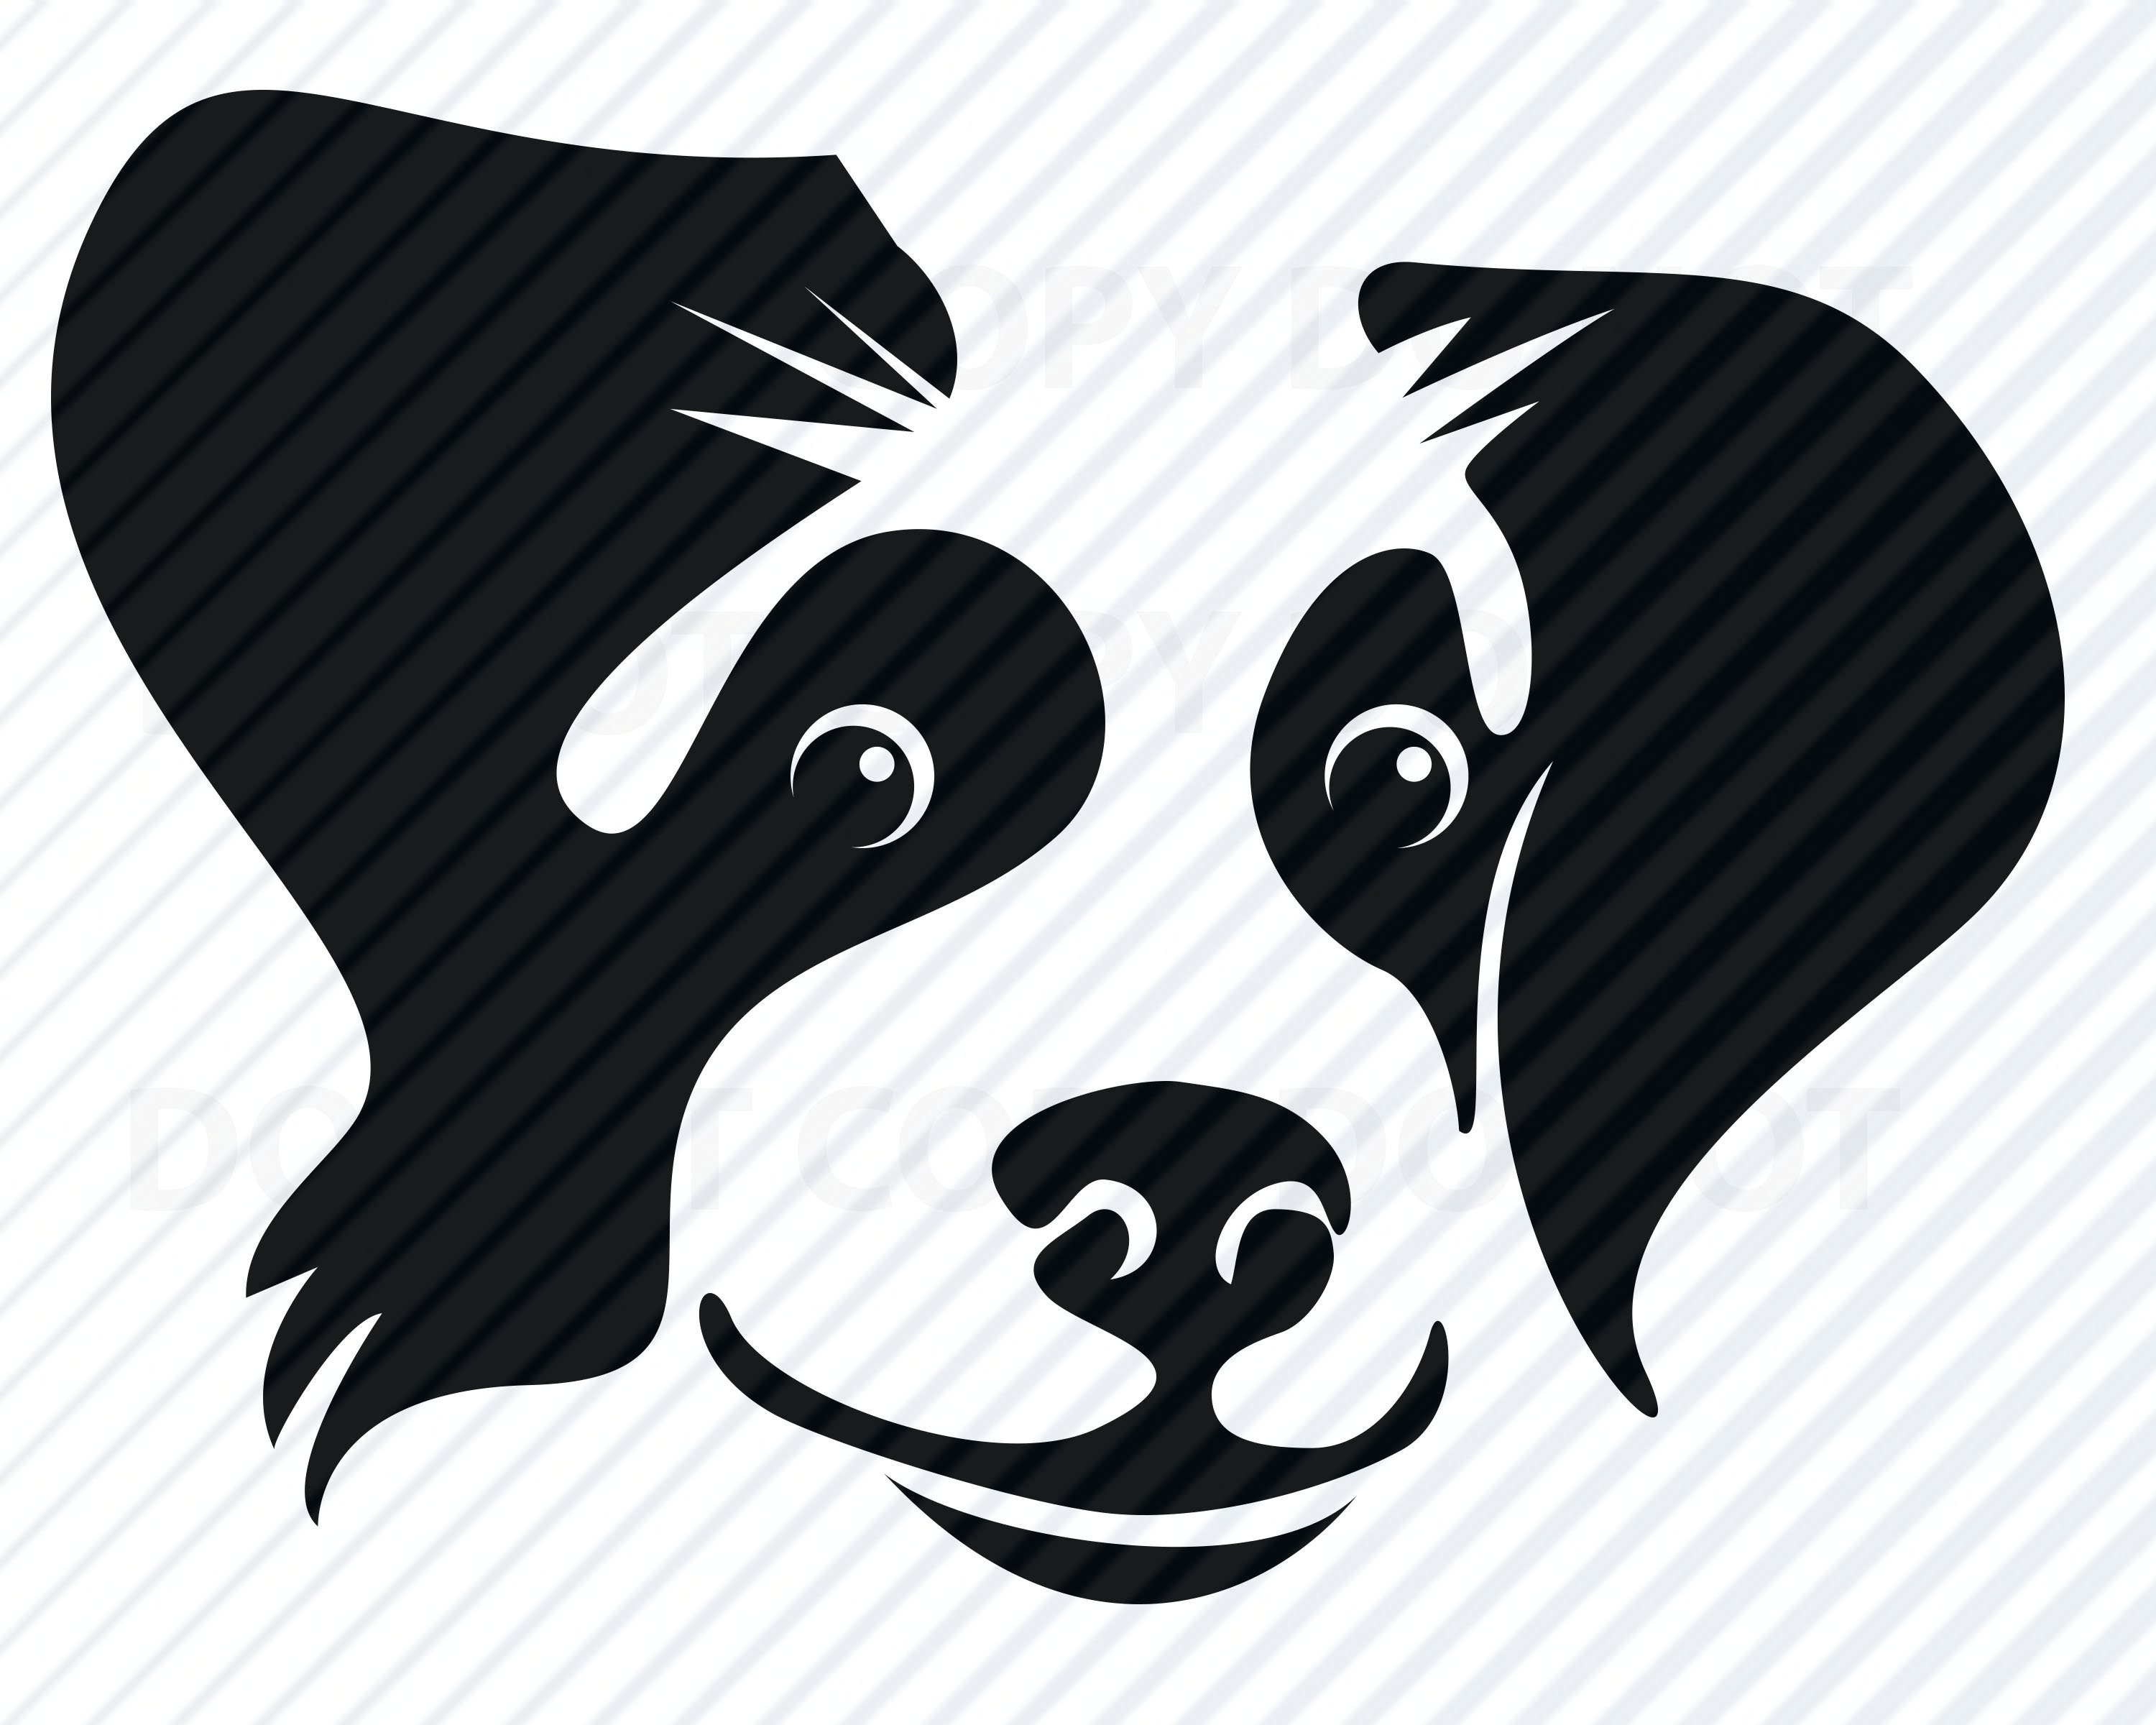 Dog Face SVG Files Dog Head Vector Images Clipart SVG Image Dog